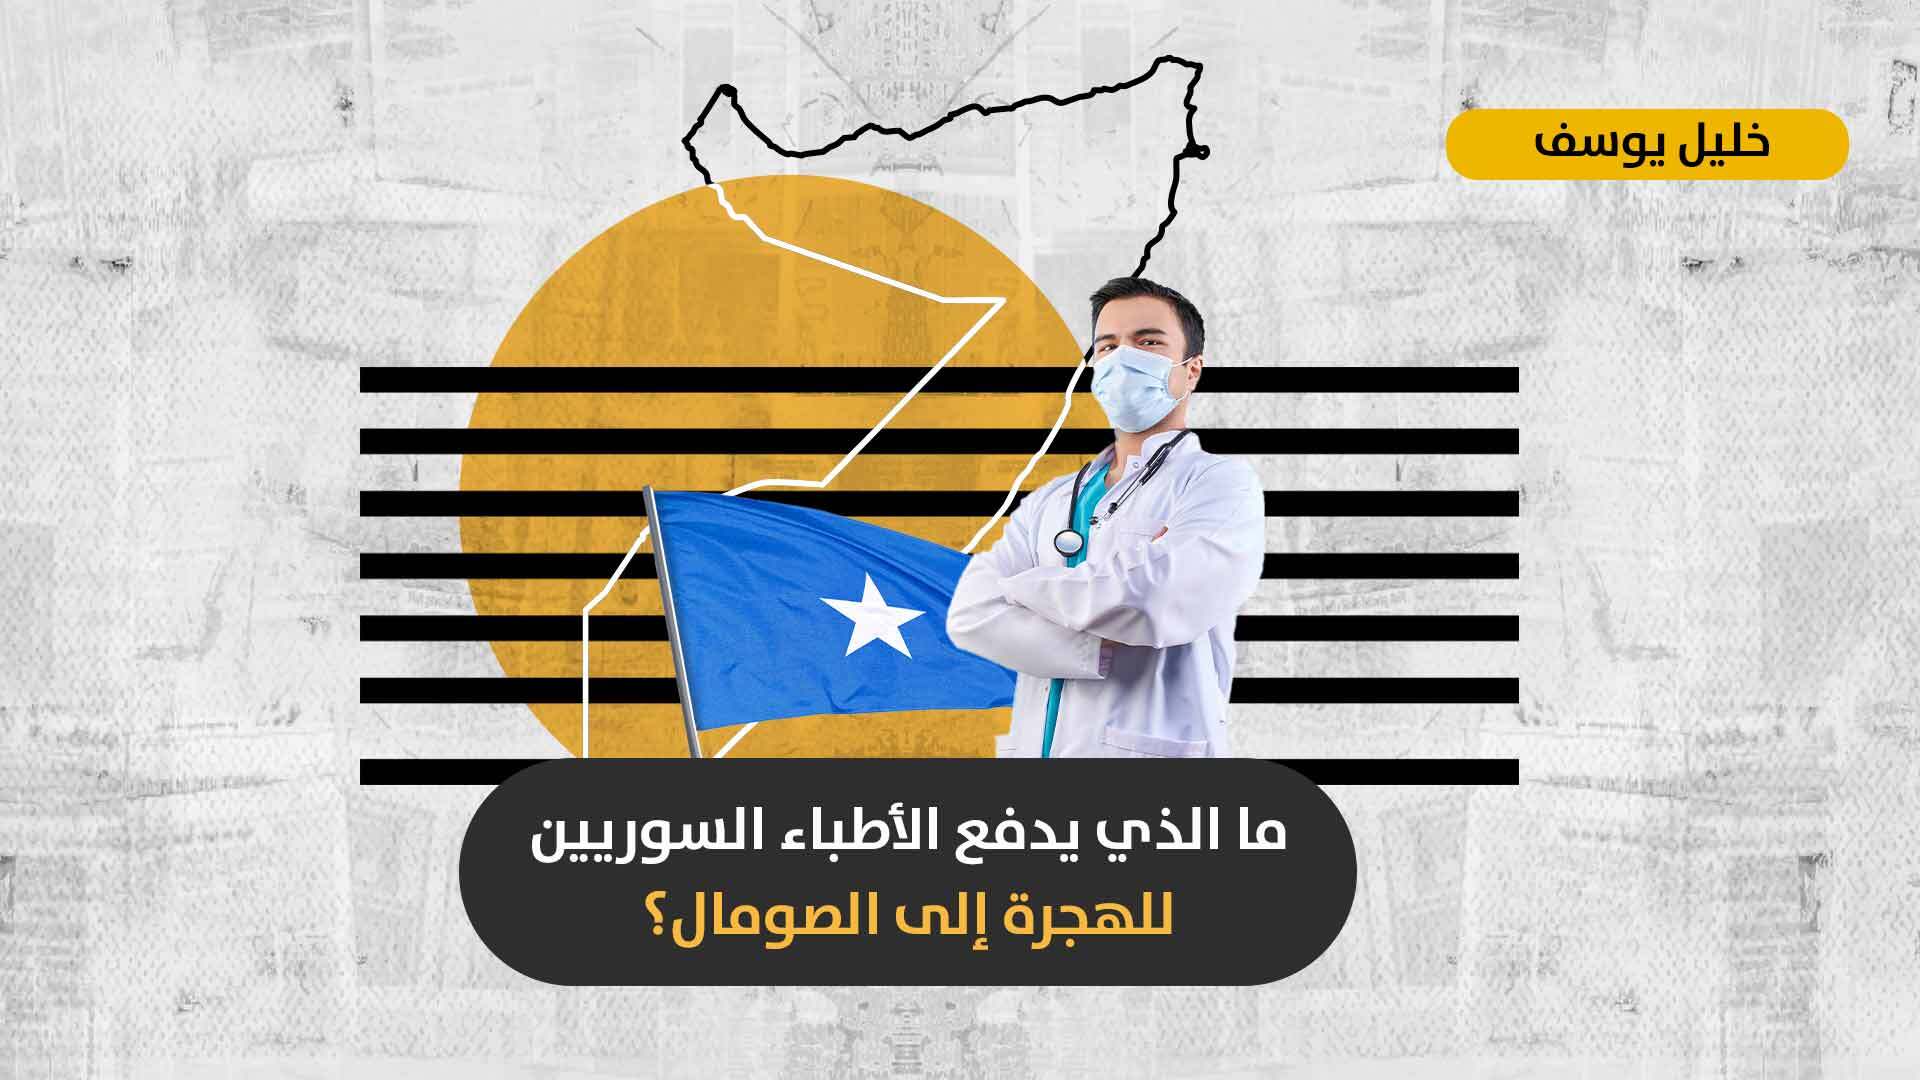 موطن جديد للهجرة السورية: هل يقدم الصومال شرطاً حياتياً أفضل للأطباء السوريين رغم الإرهاب والفوضى الأمنية؟